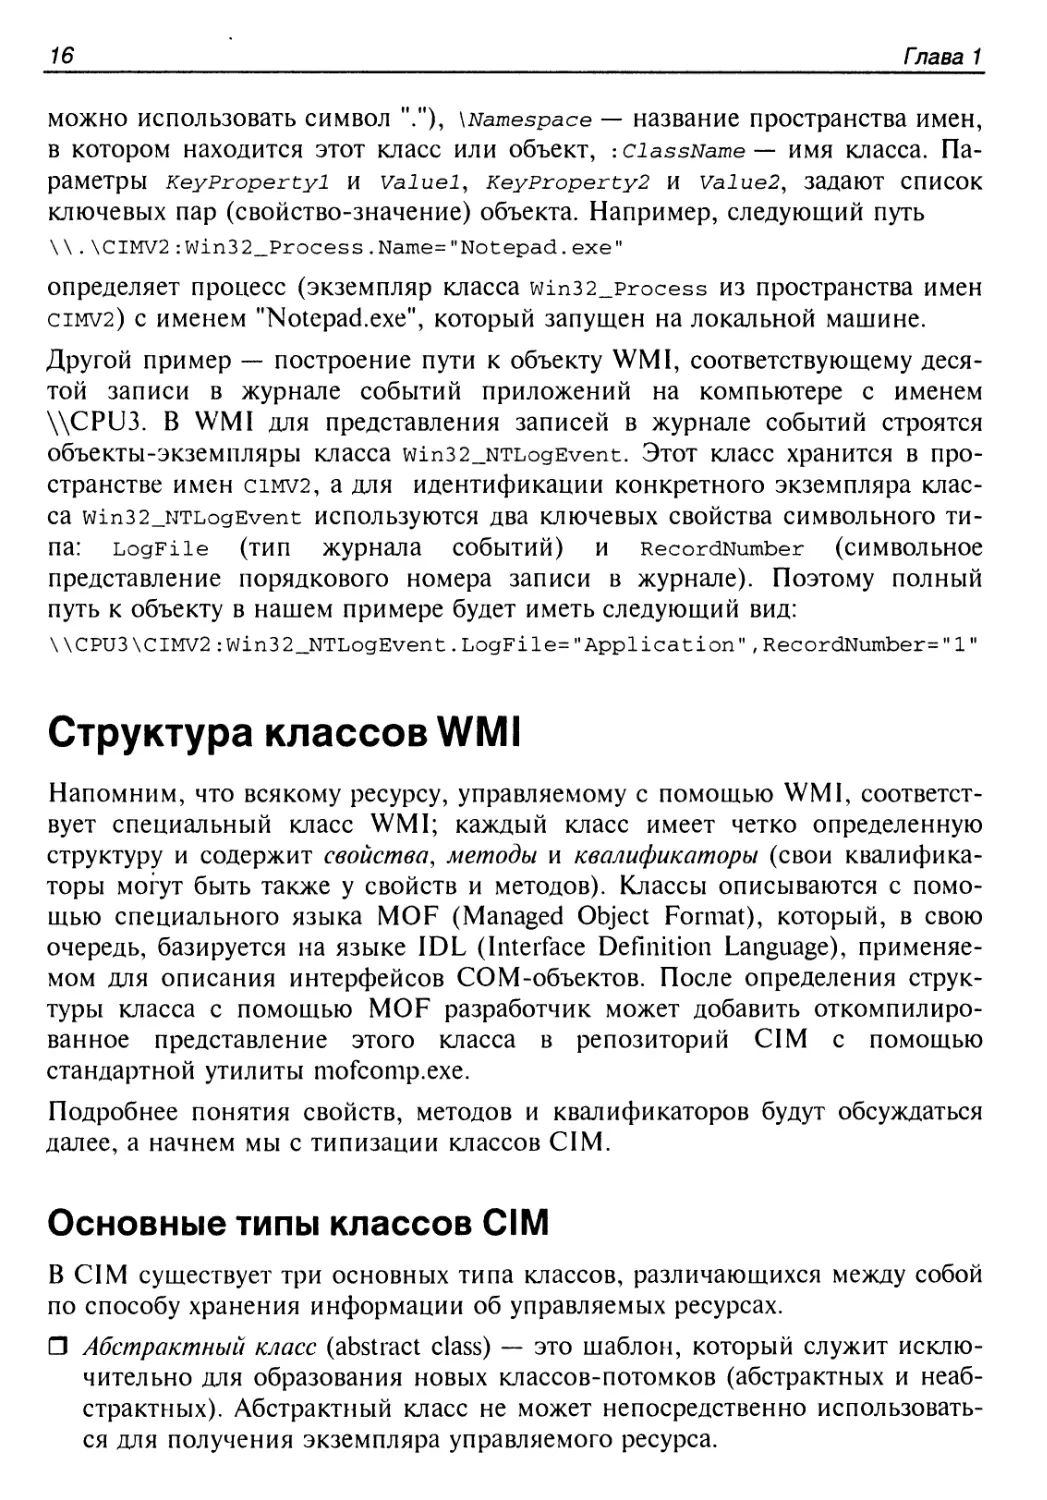 Структура классов WMI